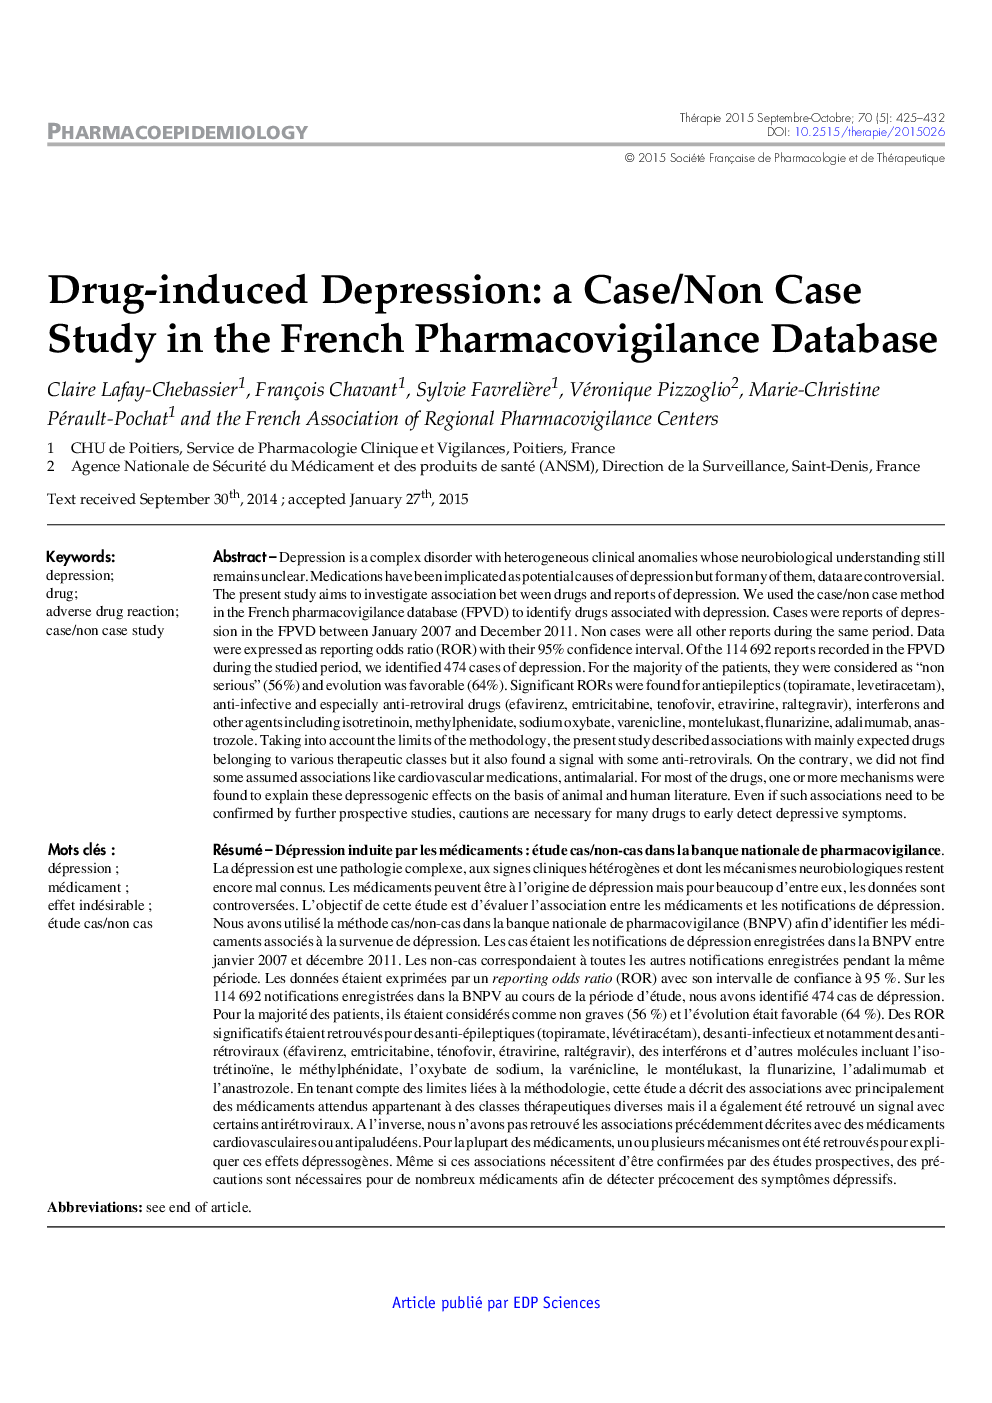 افسردگی ناشی از مواد مخدر: مطالعه موردی / غیرمستقیم در پایگاه داده فارماکوگرافی فرانسه 